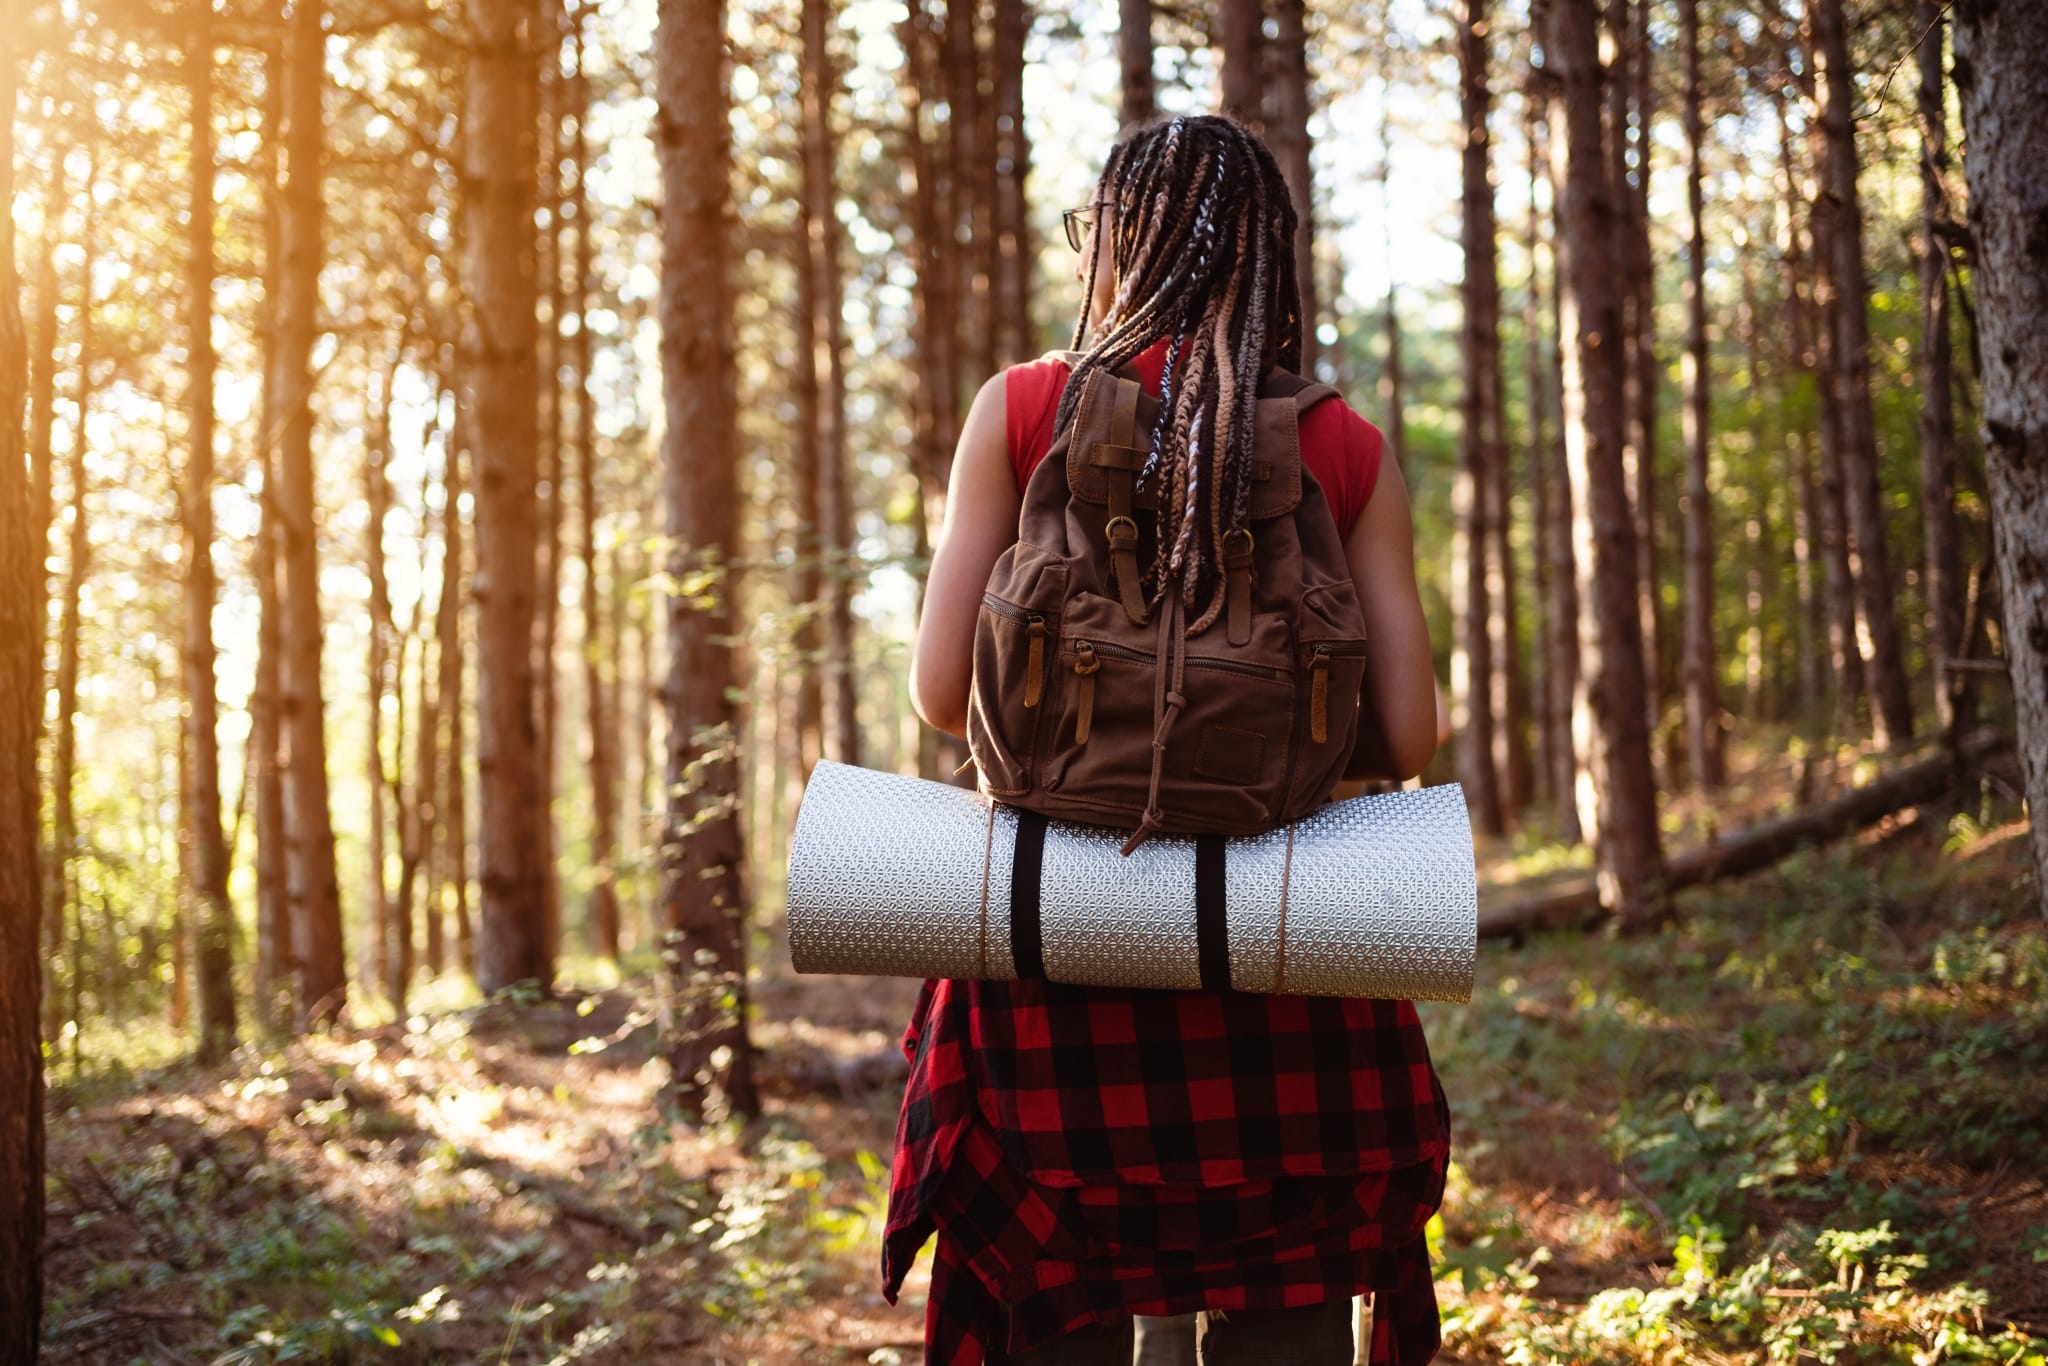 Junge Frau mit Dreads von hinten mit Rucksack und Isomatte, die durch einen Wald wandert.